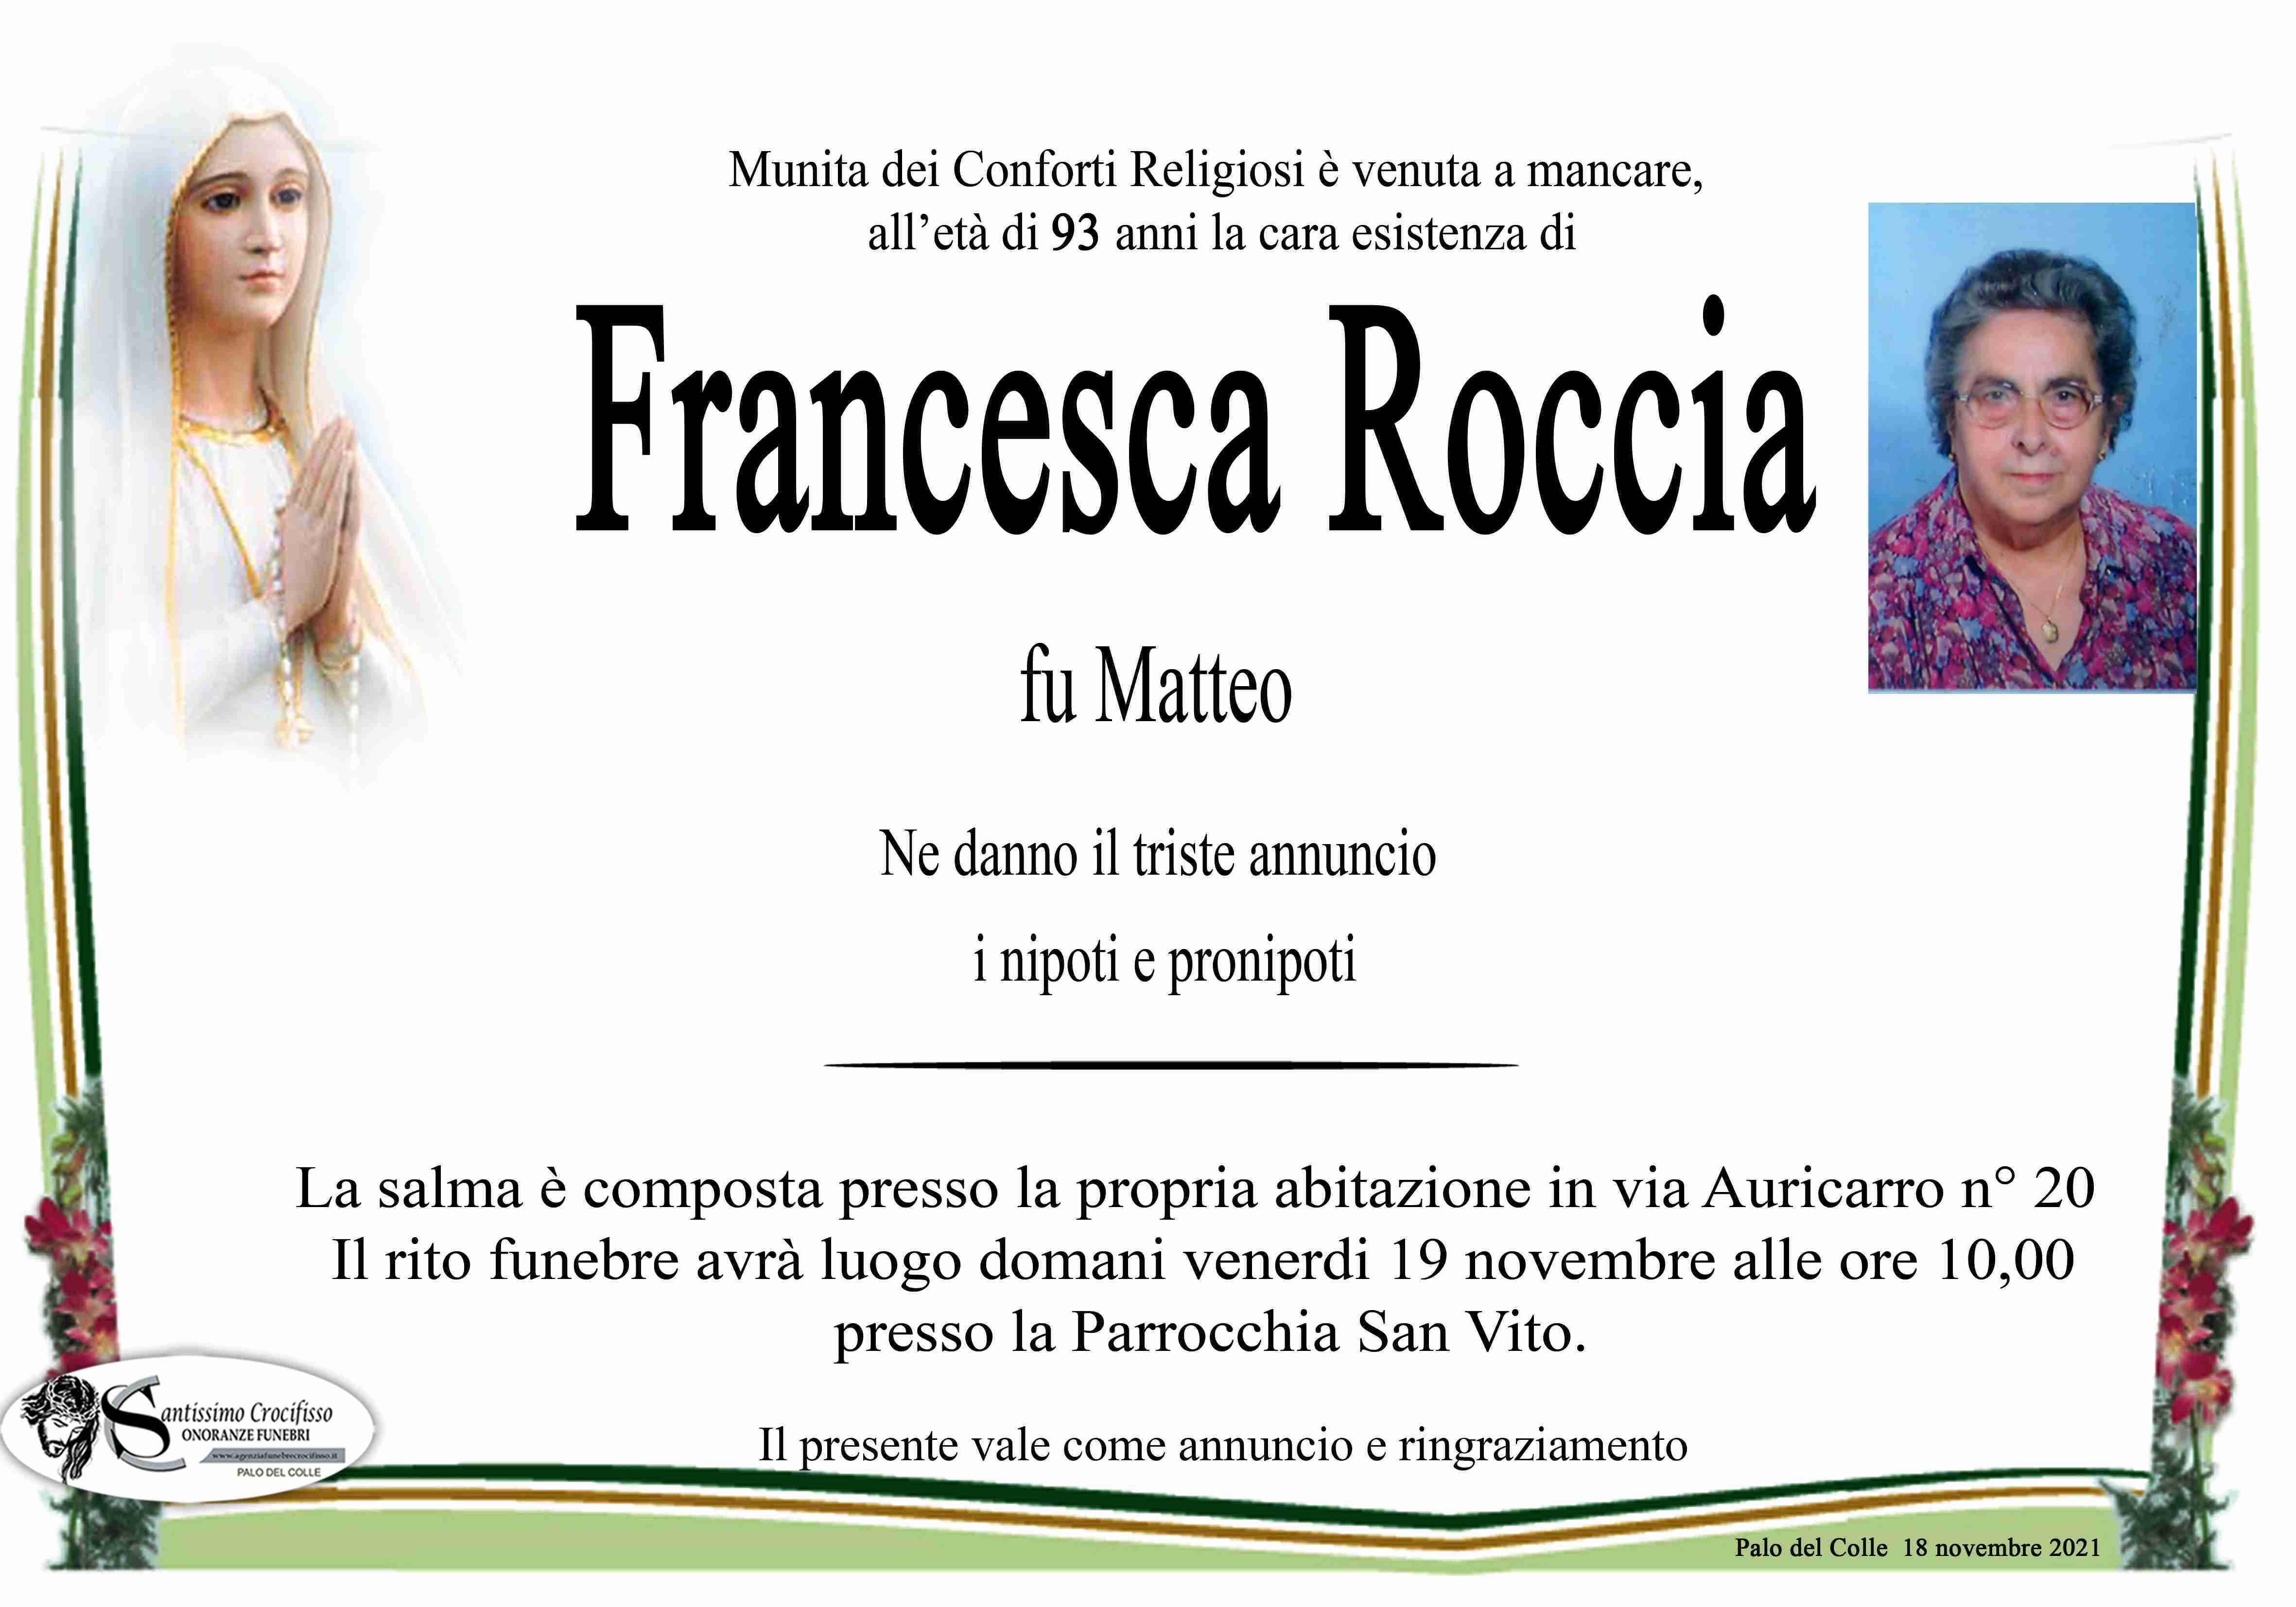 Francesca Roccia